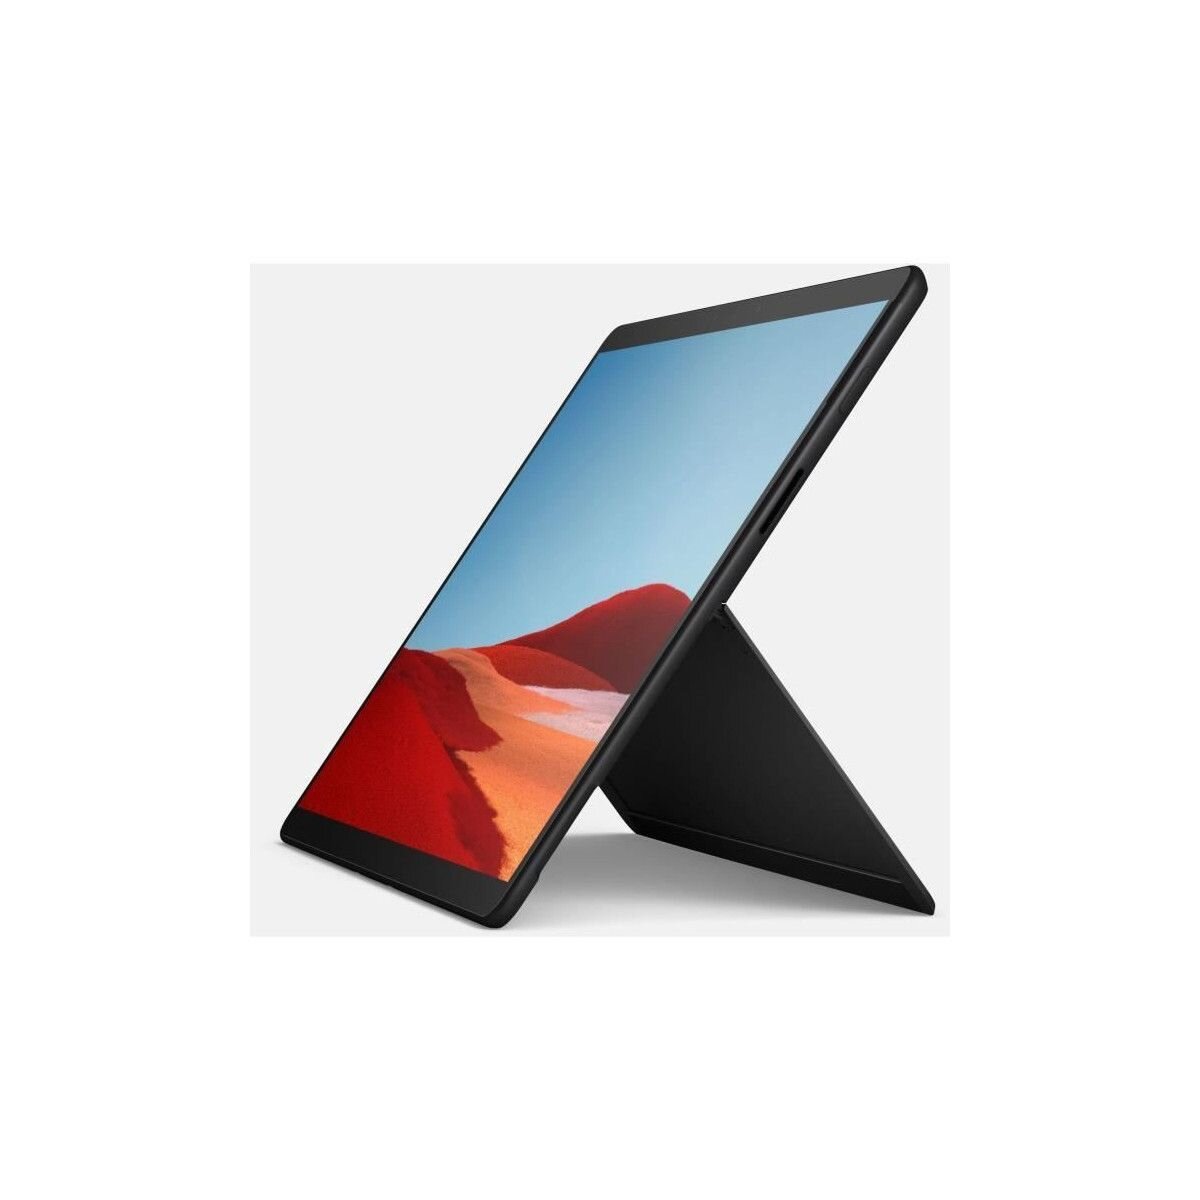  jusqu'à -31% sur les PC portables, tablettes Microsoft Surface -  Le Parisien